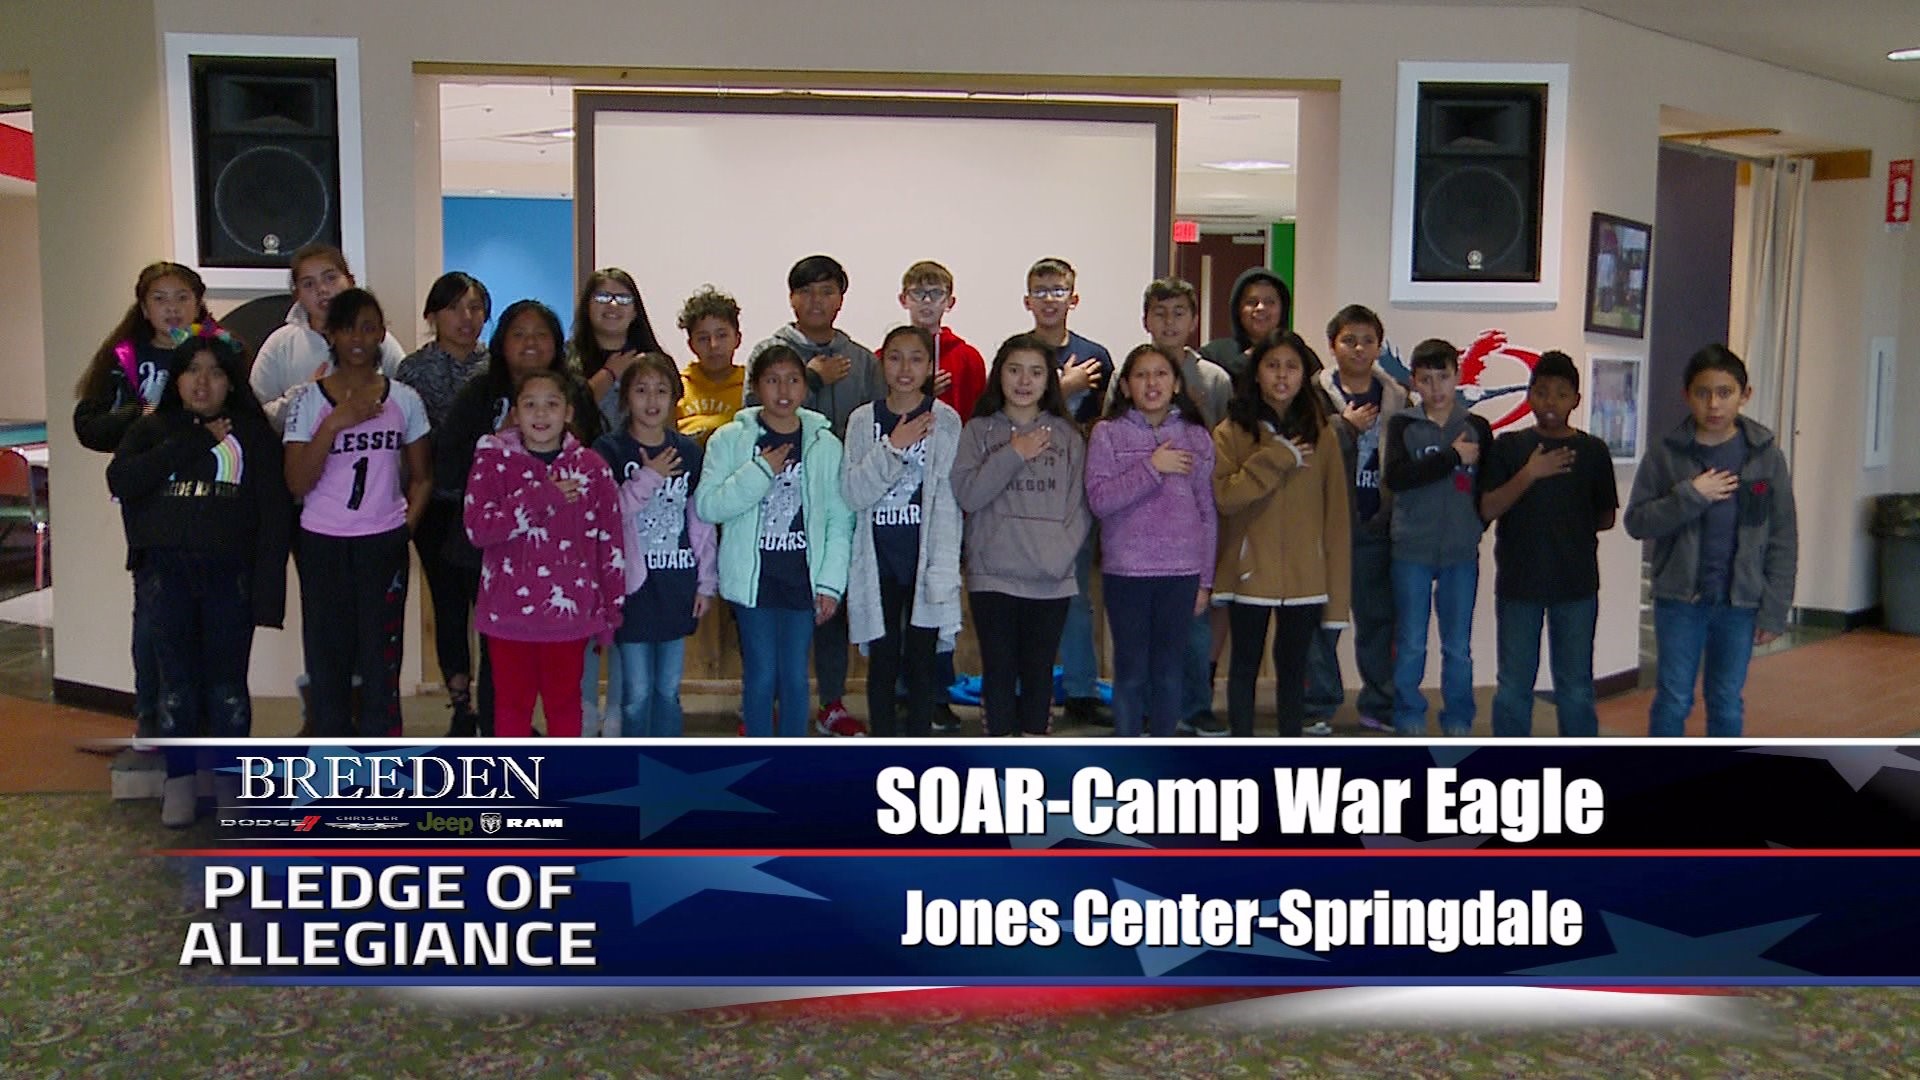 SOAR-Camp War Eagle Jones Center - Springdale